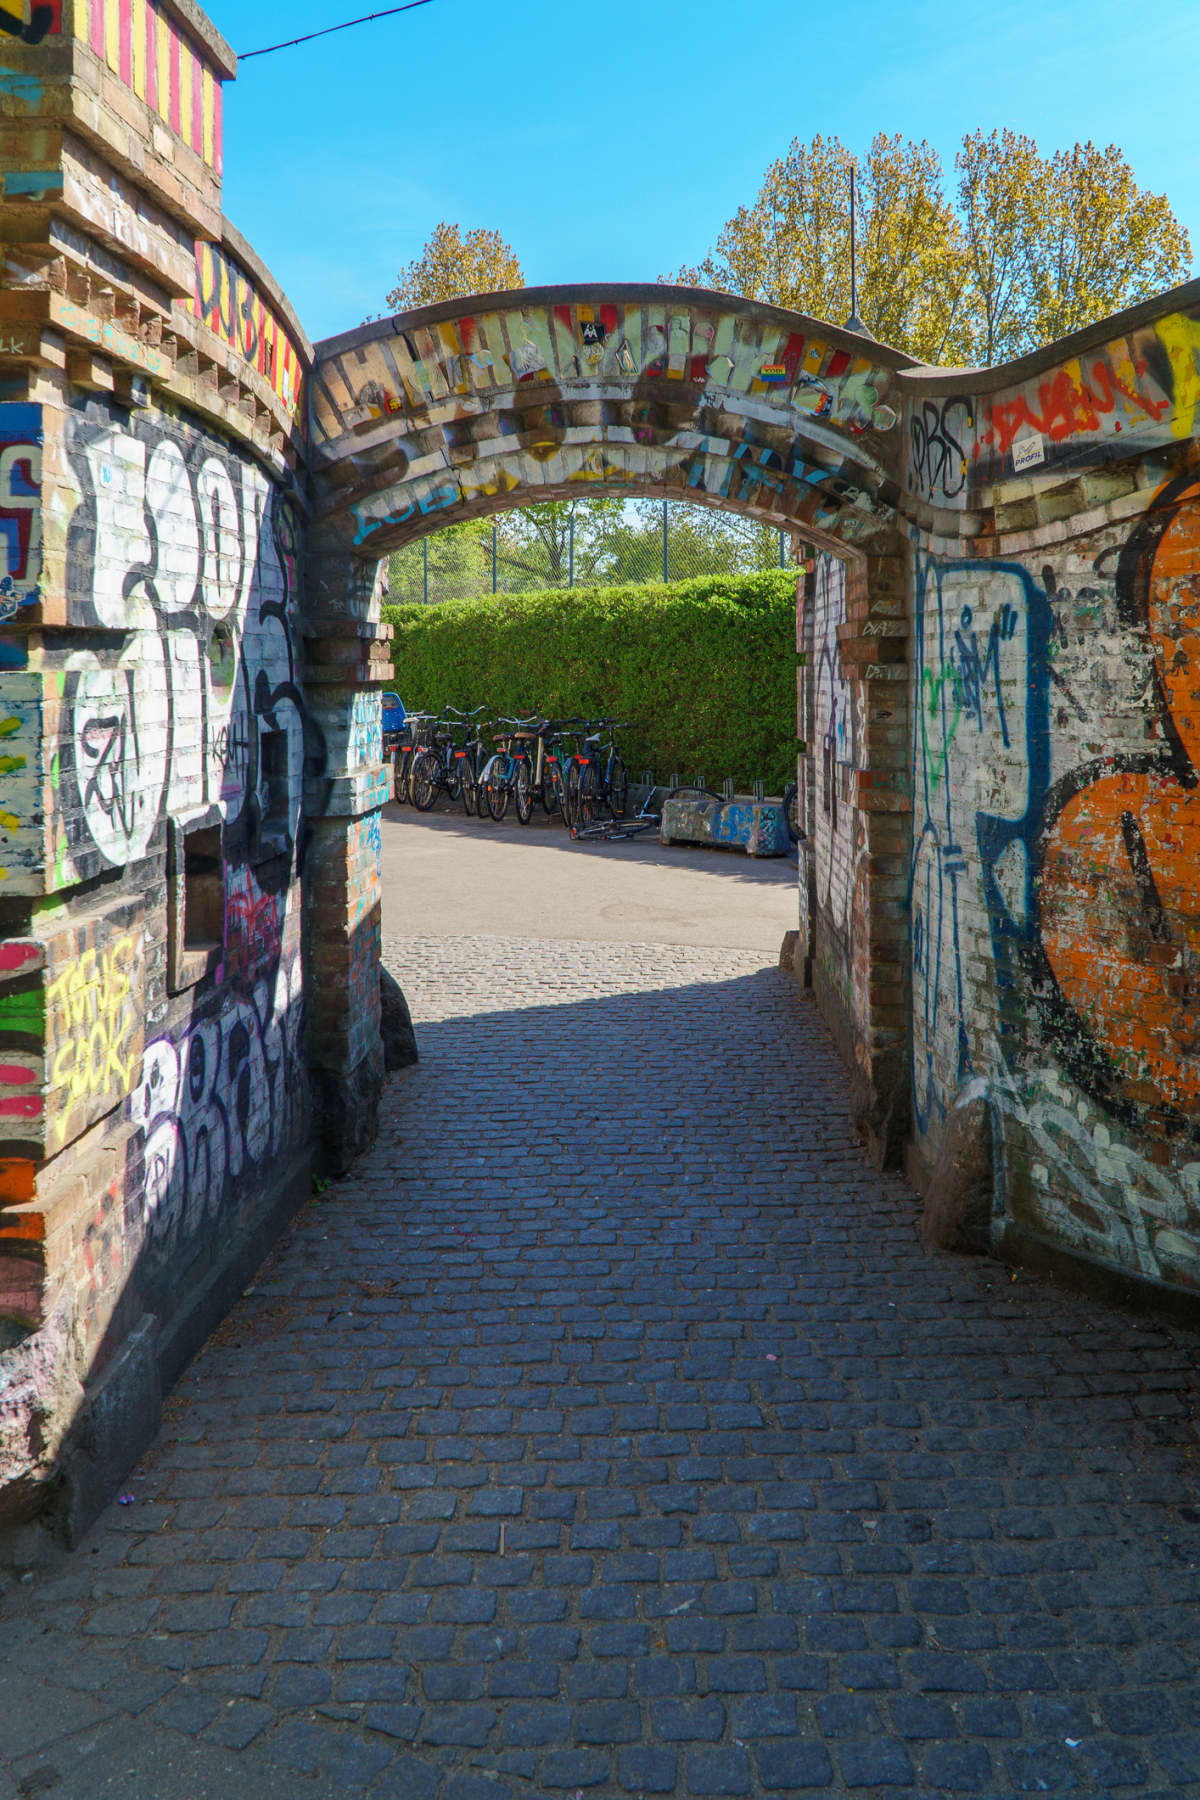 Copenhagen, Denmark - 08.05.2022: Inside of Freetown Christiania.